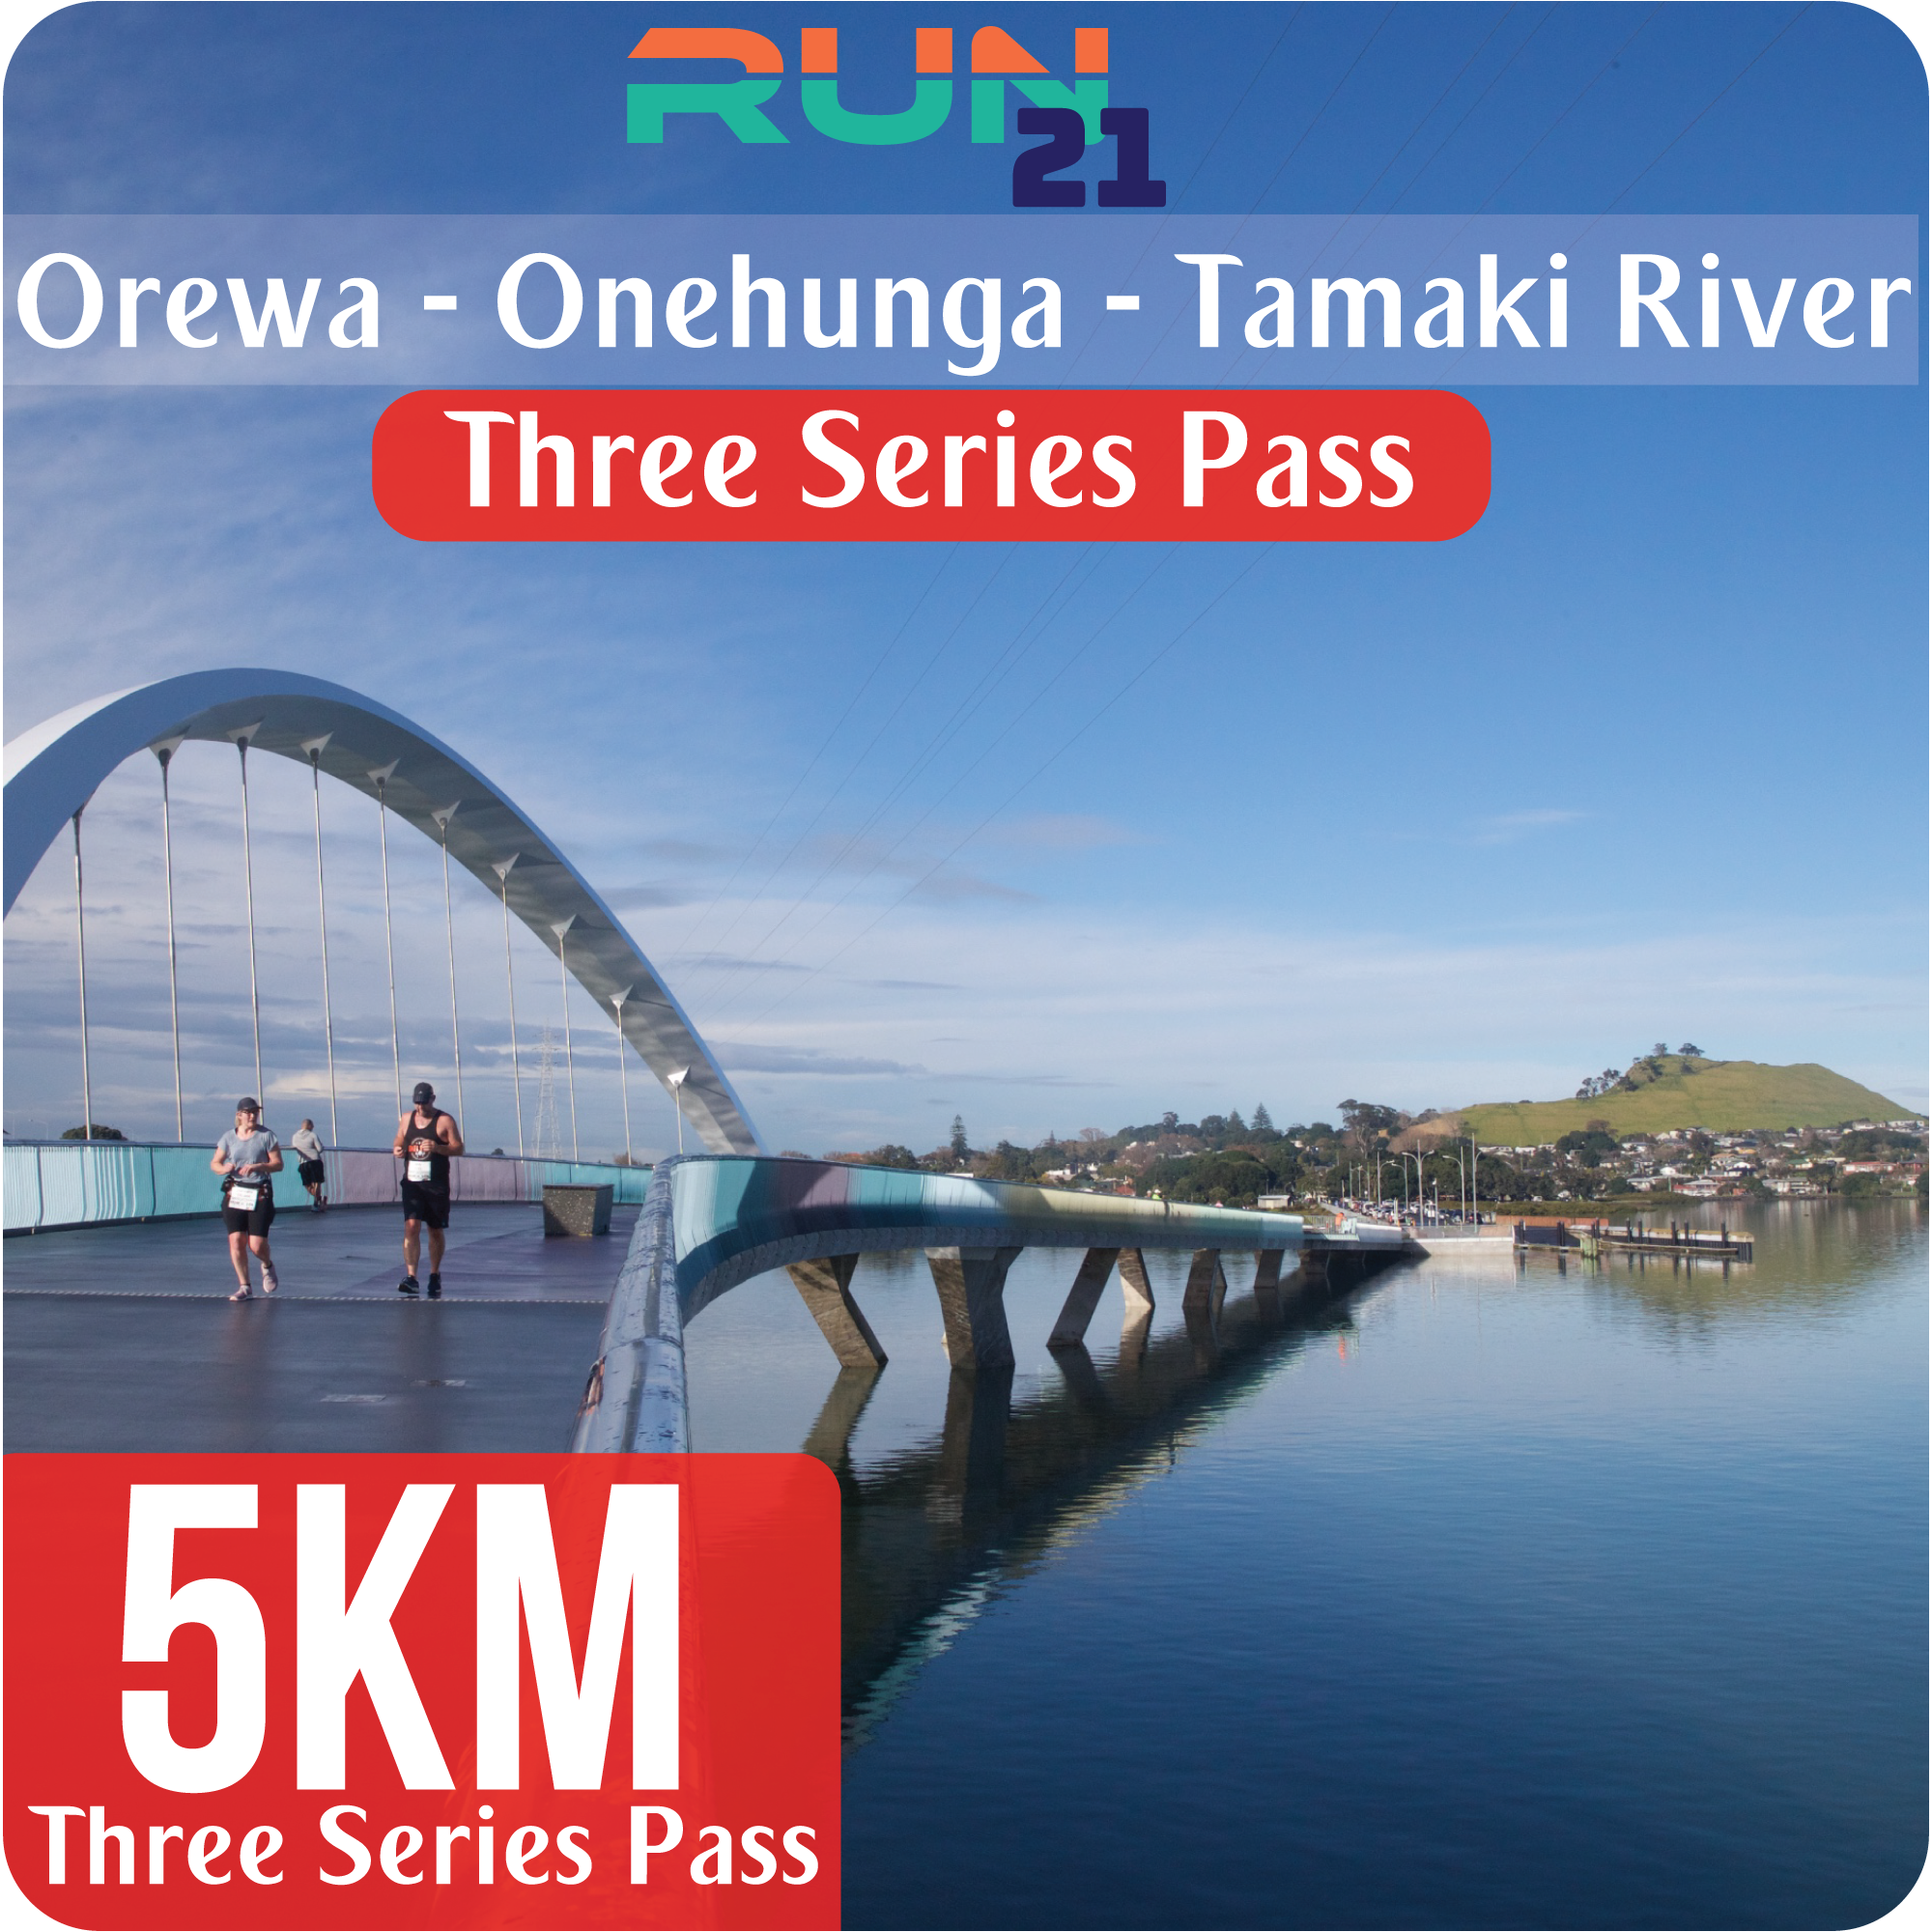 5 KM - Three Series Pass